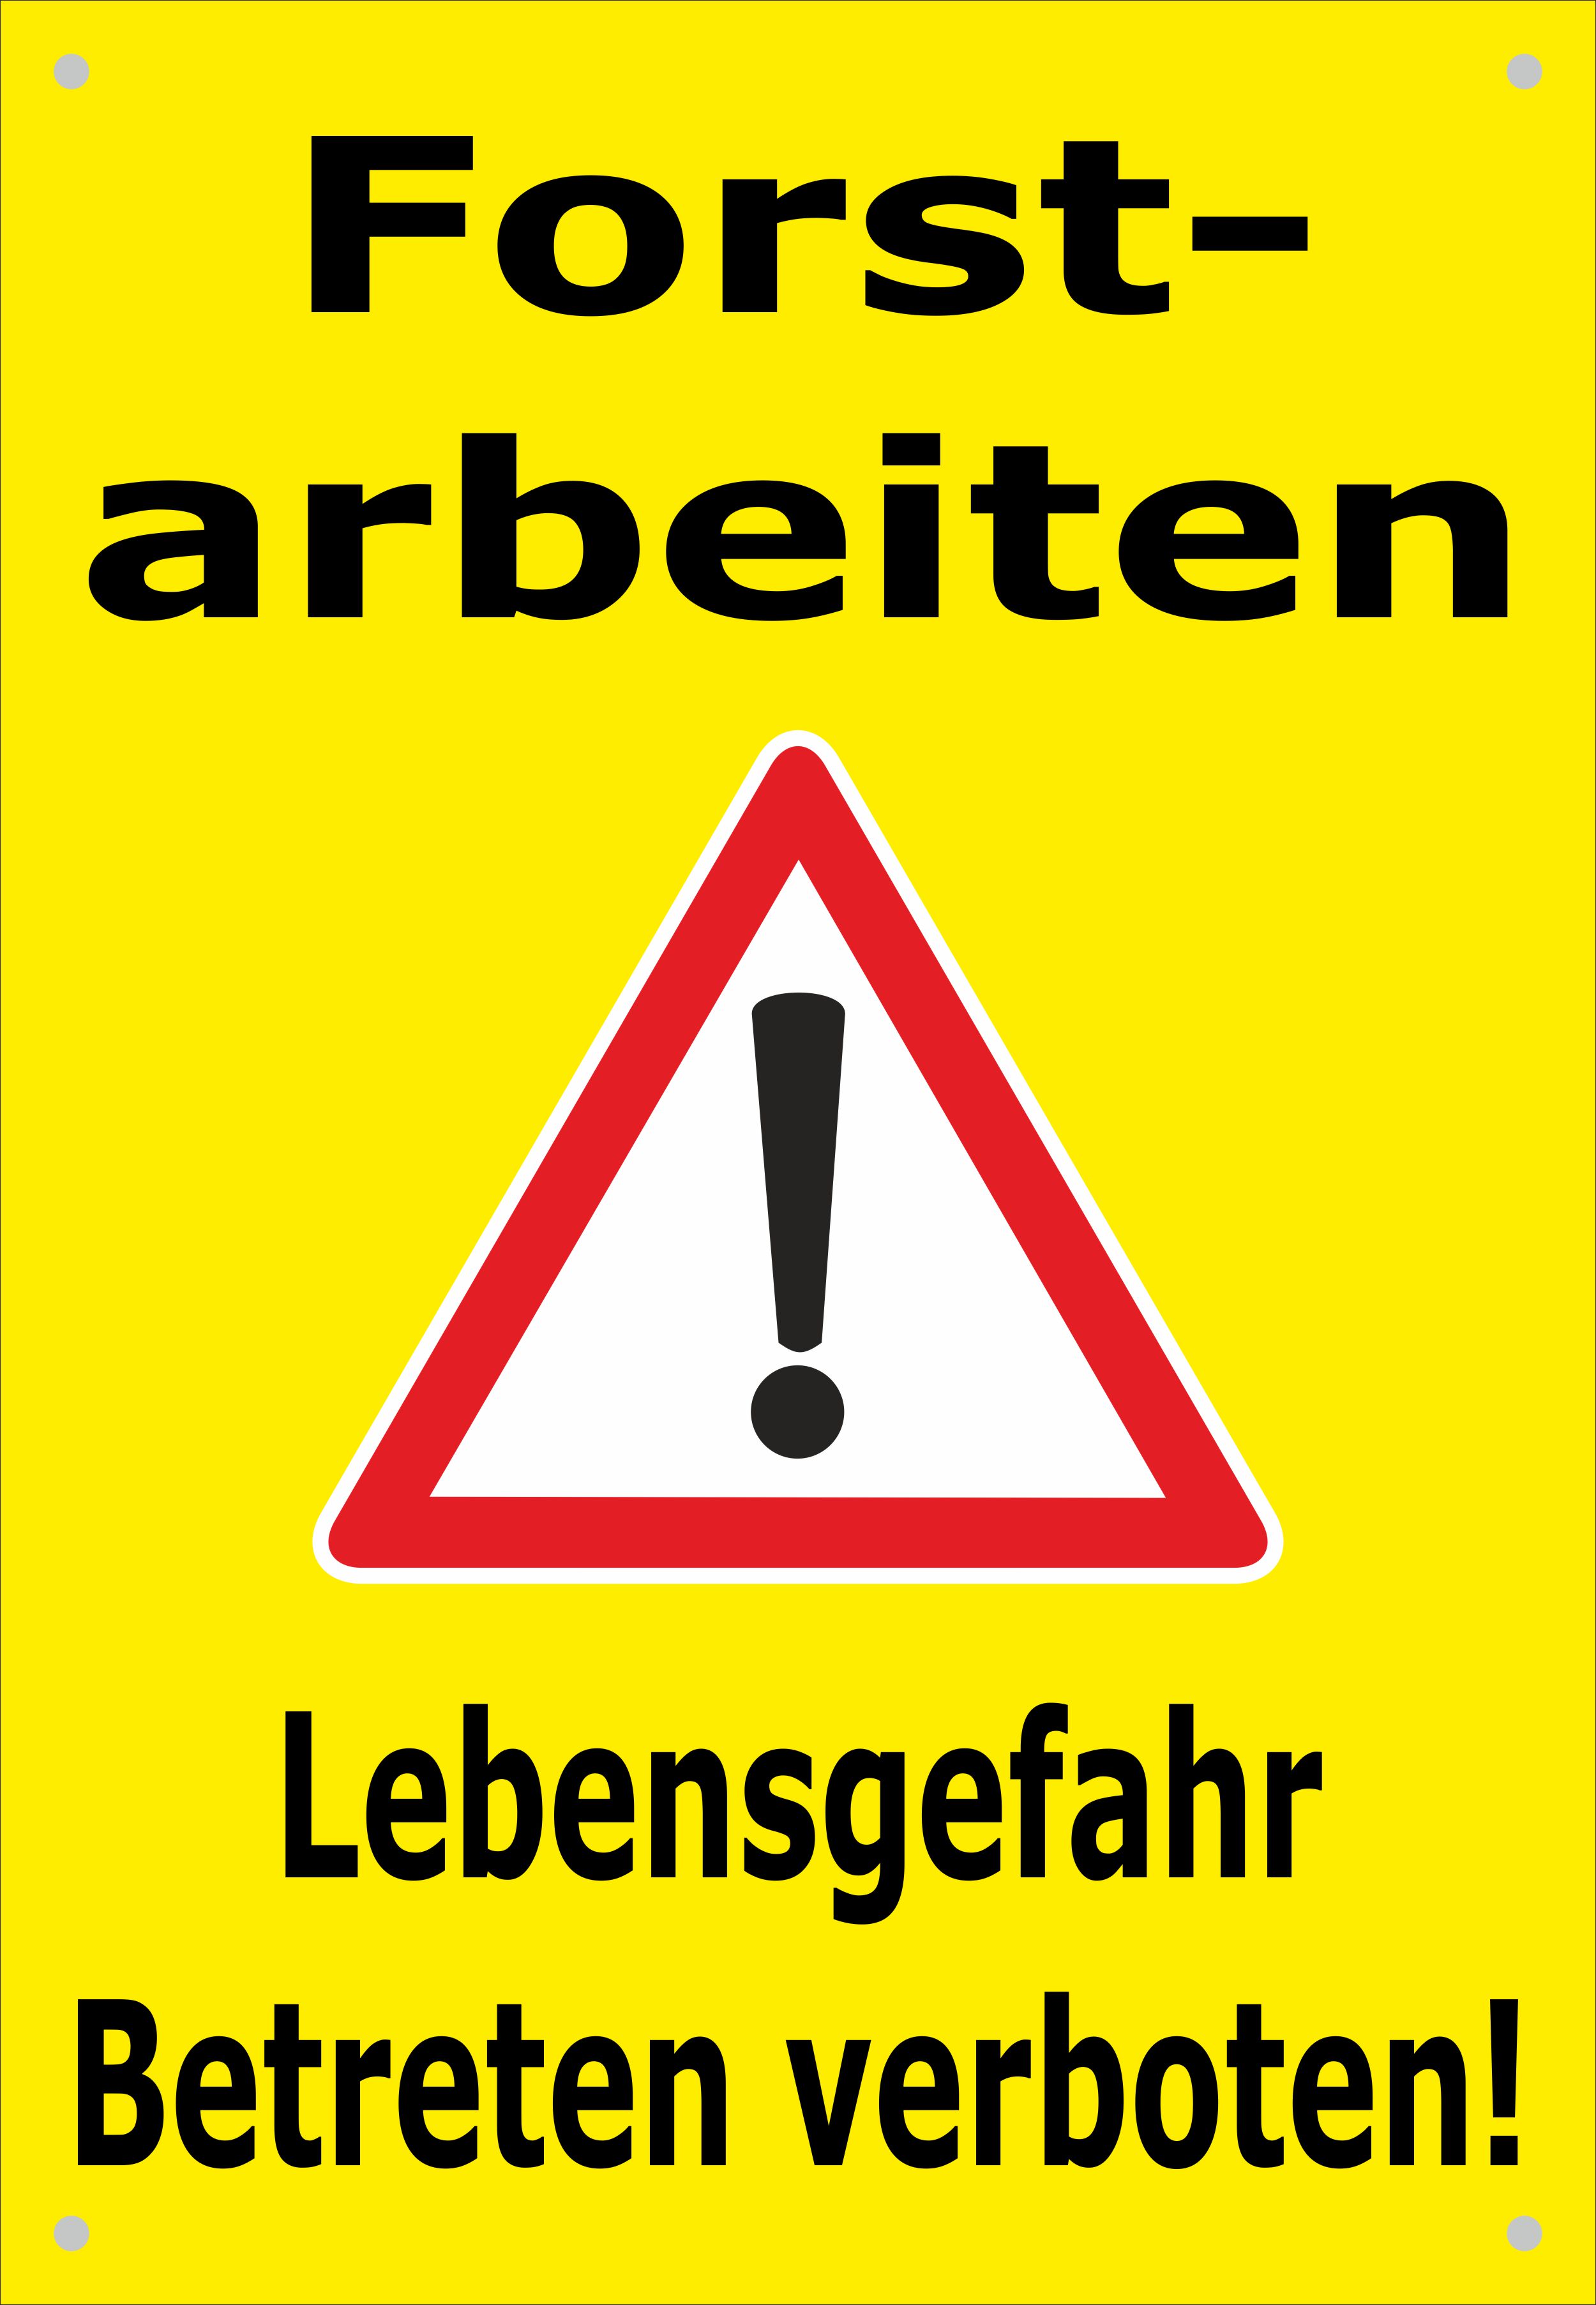 26-932 Schild Betreten verboten Forstarbeiten Absperr Banner Hinweisschild 